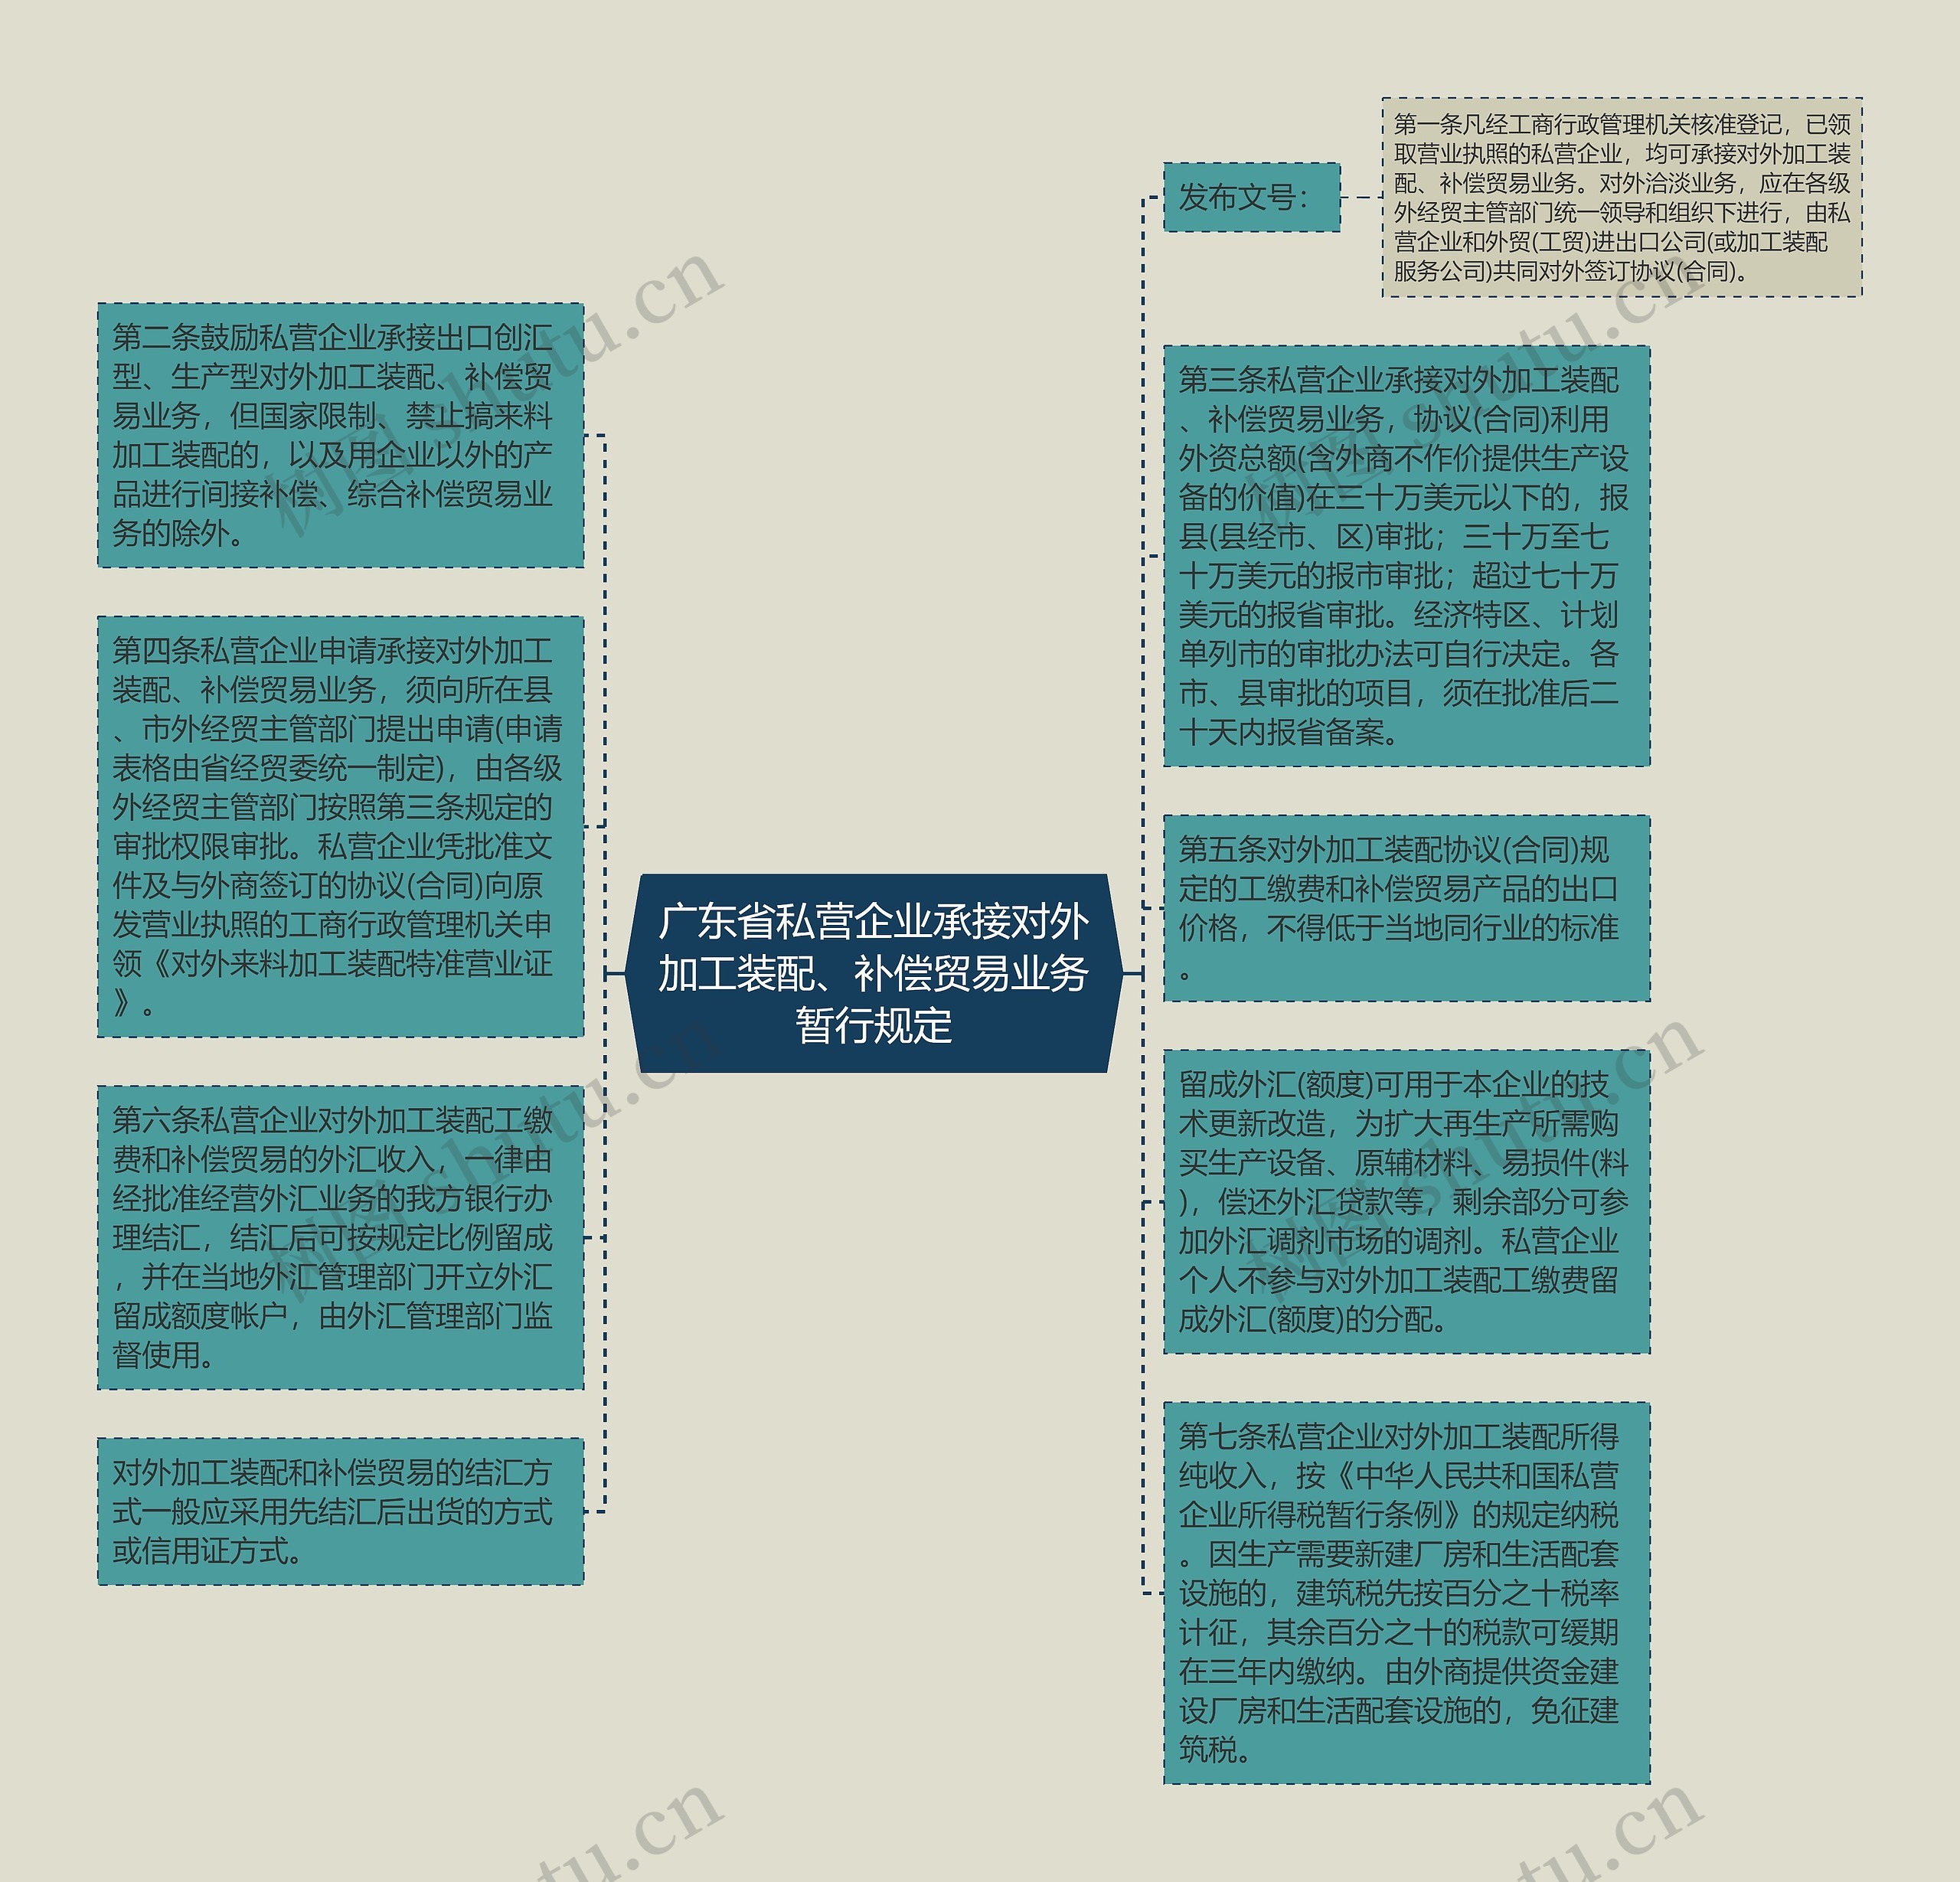 广东省私营企业承接对外加工装配、补偿贸易业务暂行规定思维导图